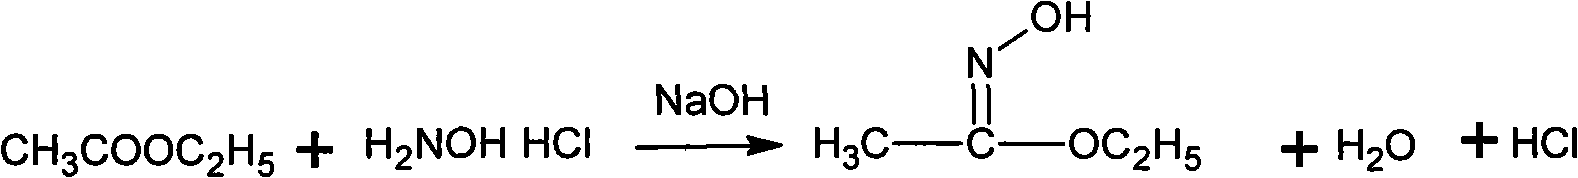 Method for synthesizing methoxamine hydrochloride